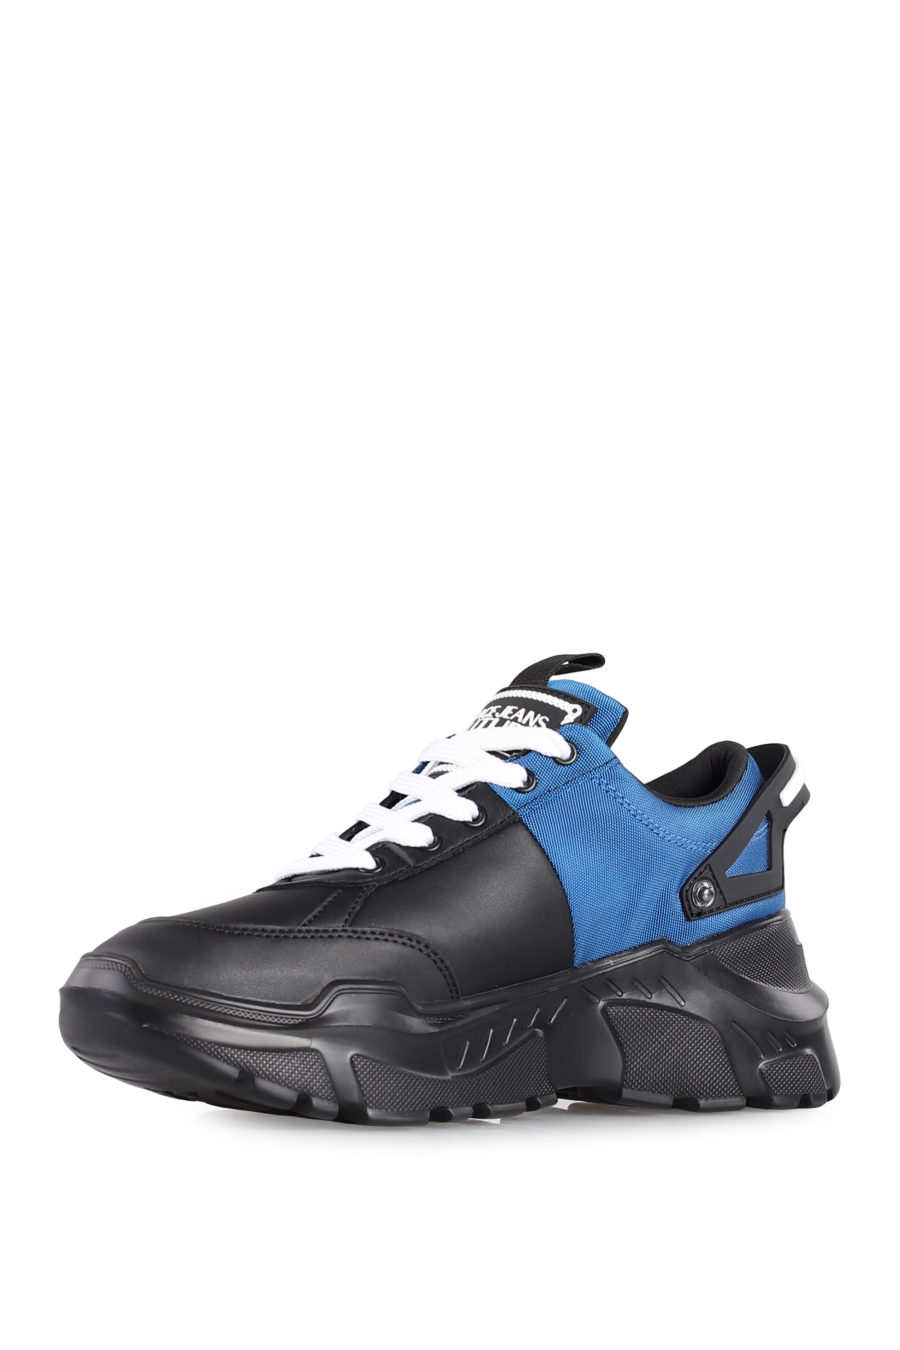 Zapatillas "Speedtrack" de color negro y azul - IMG 1026